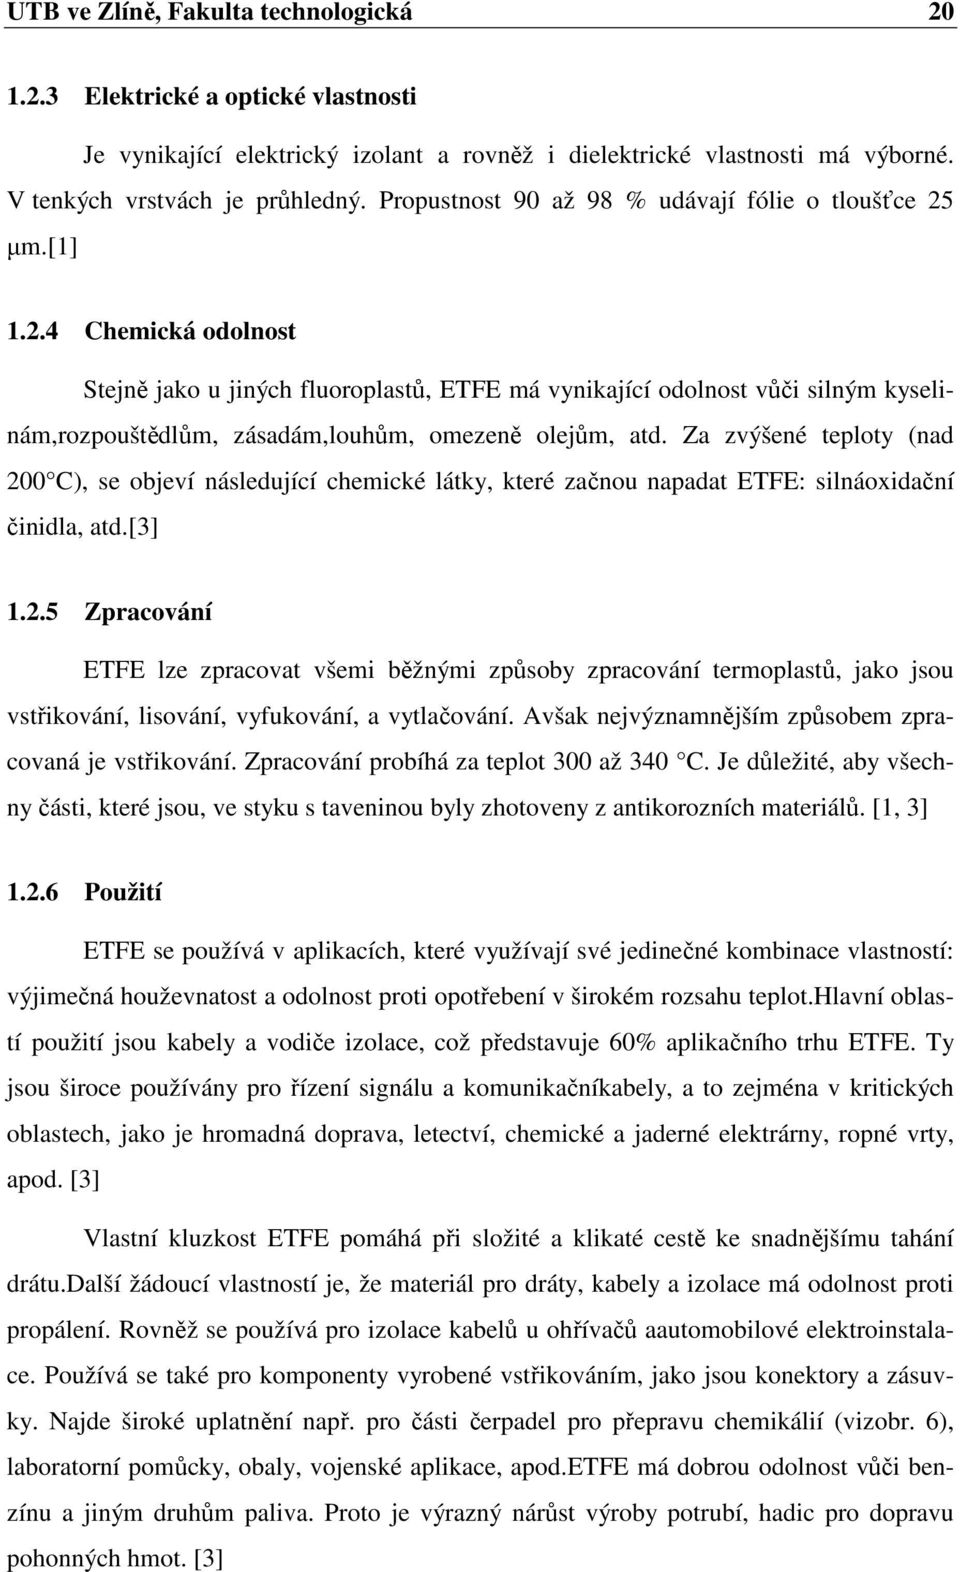 µm.[1] 1.2.4 Chemická odolnost Stejně jako u jiných fluoroplastů, ETFE má vynikající odolnost vůči silným kyselinám,rozpouštědlům, zásadám,louhům, omezeně olejům, atd.